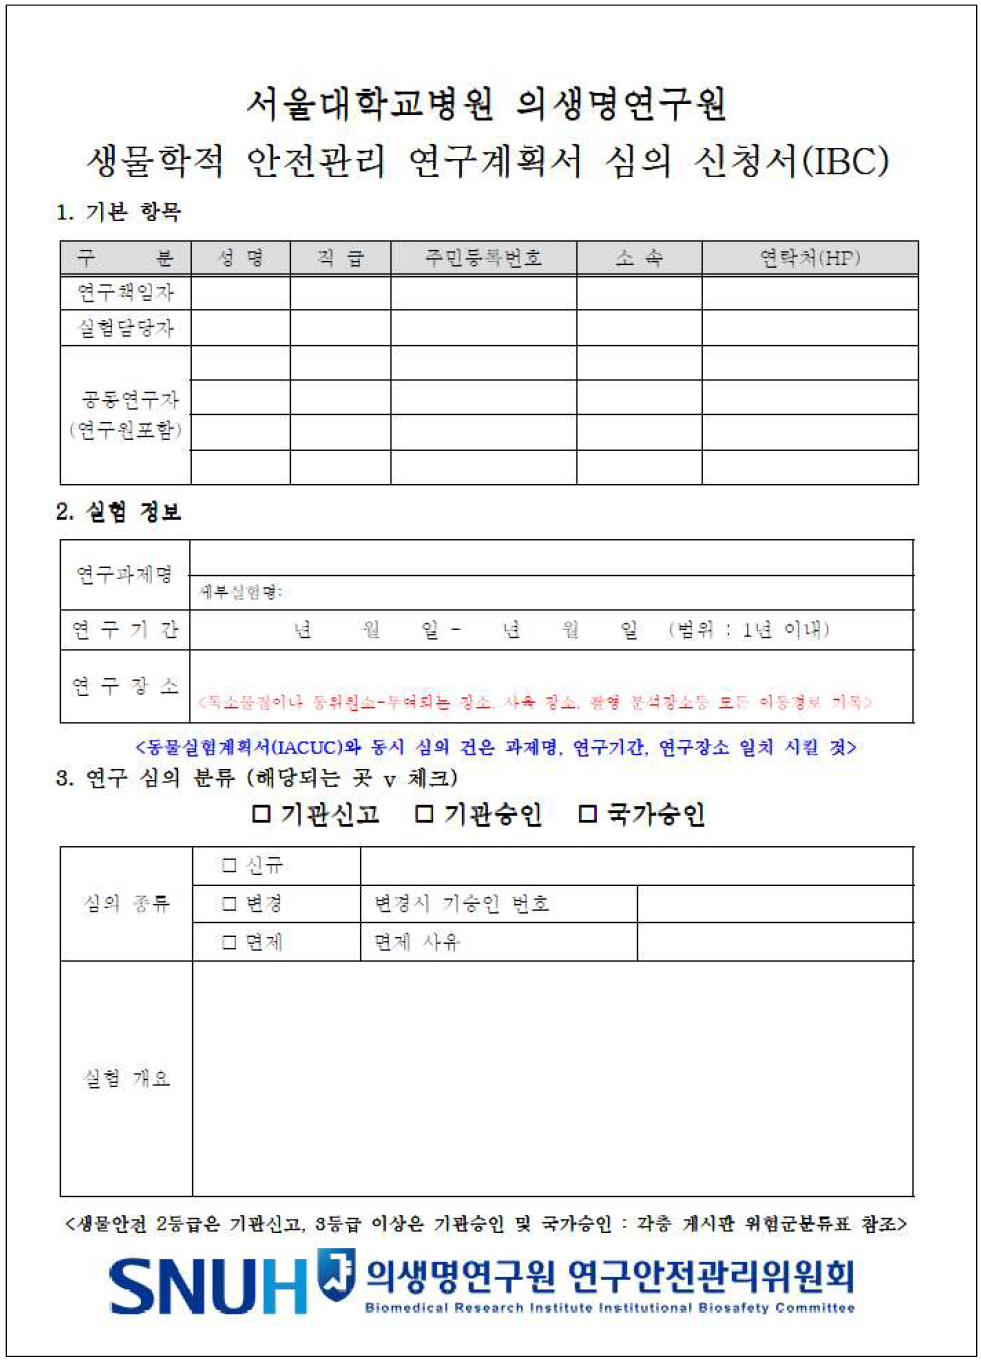 서울대학교병원 의생명연구원 IBC 연구계획서 심의 신청서 서식